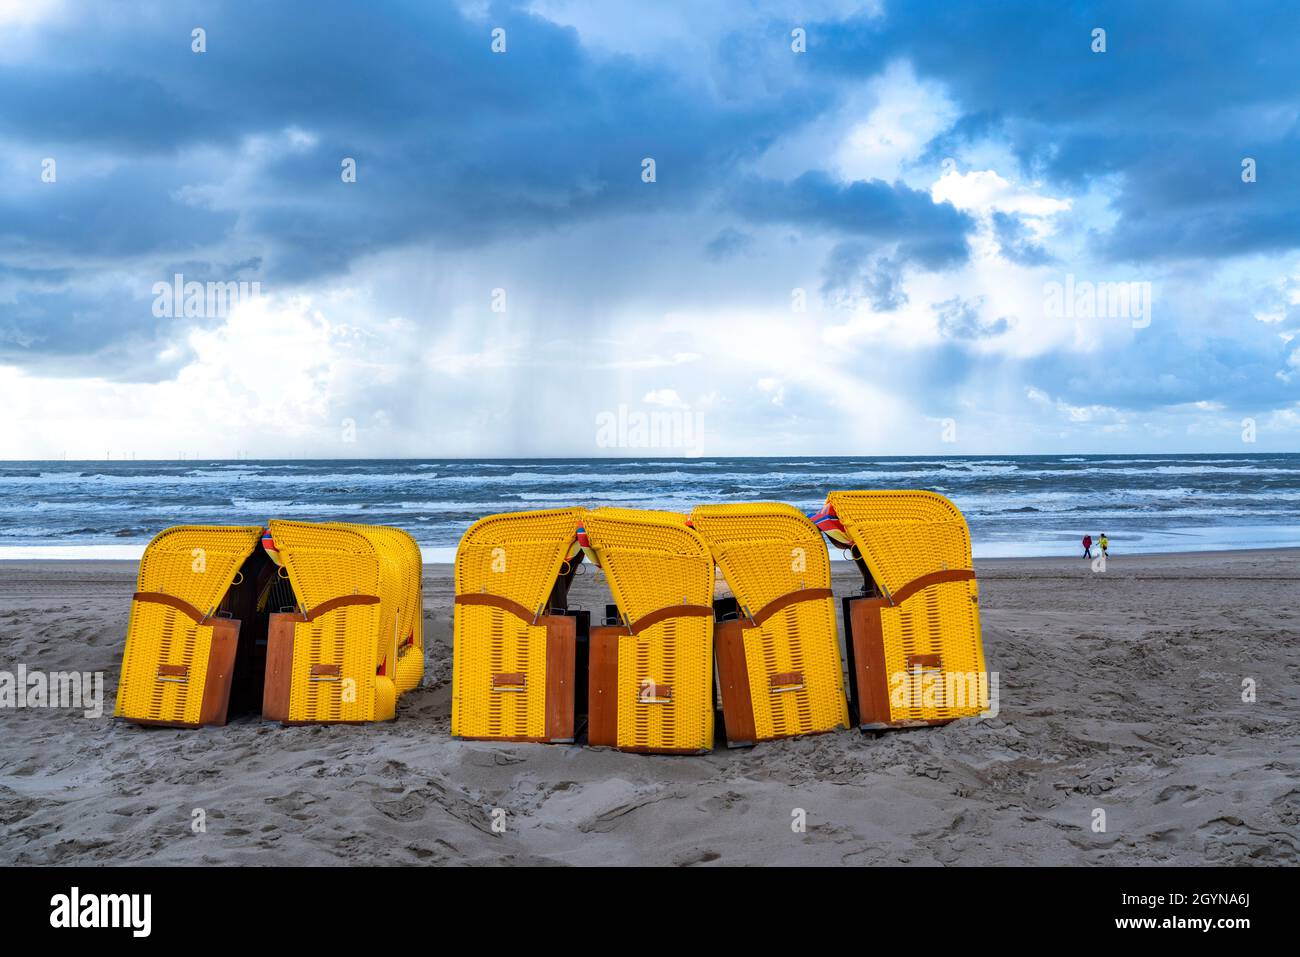 Ende der Saison am Strand, dunkle Sturmwolken, raues Meer, Herbst an der Nordsee in Nordholland, in der Nähe der Stadt Egmond aan Zee, Liegestühle Stockfoto